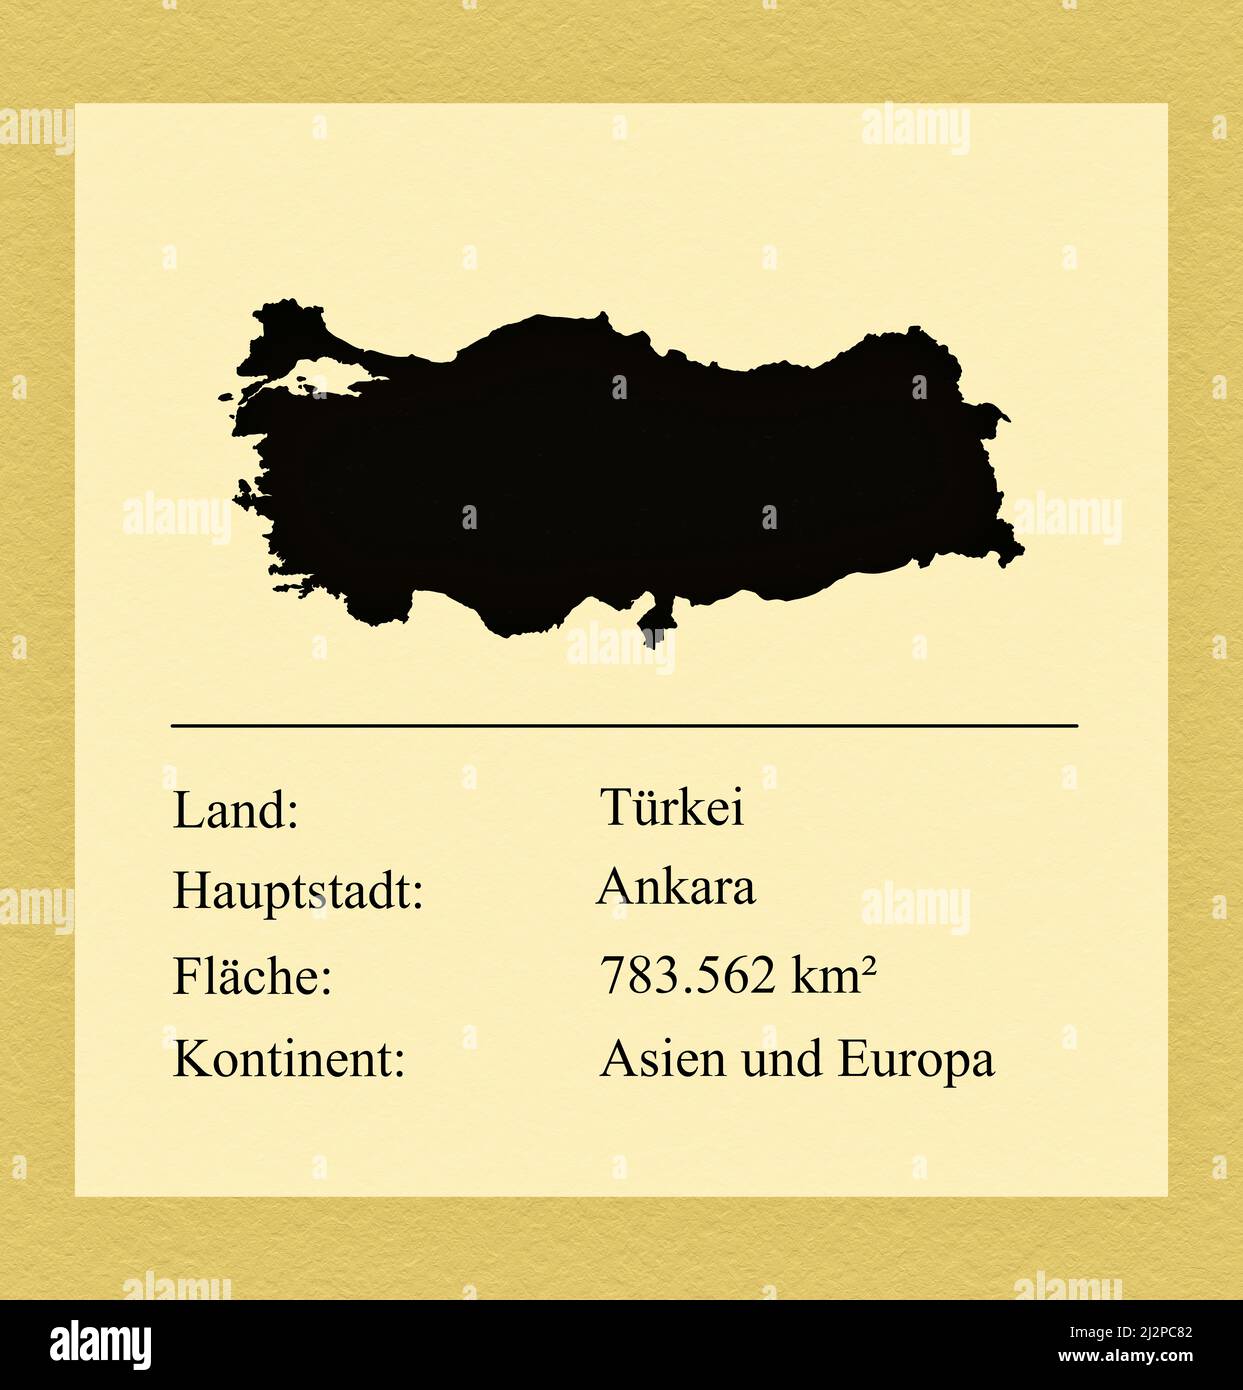 Umrisse des Landes Türkei, darunter ein kleiner Steckbrief mit Ländernamen, Hauptstadt, Fläche und Kontinent Foto Stock